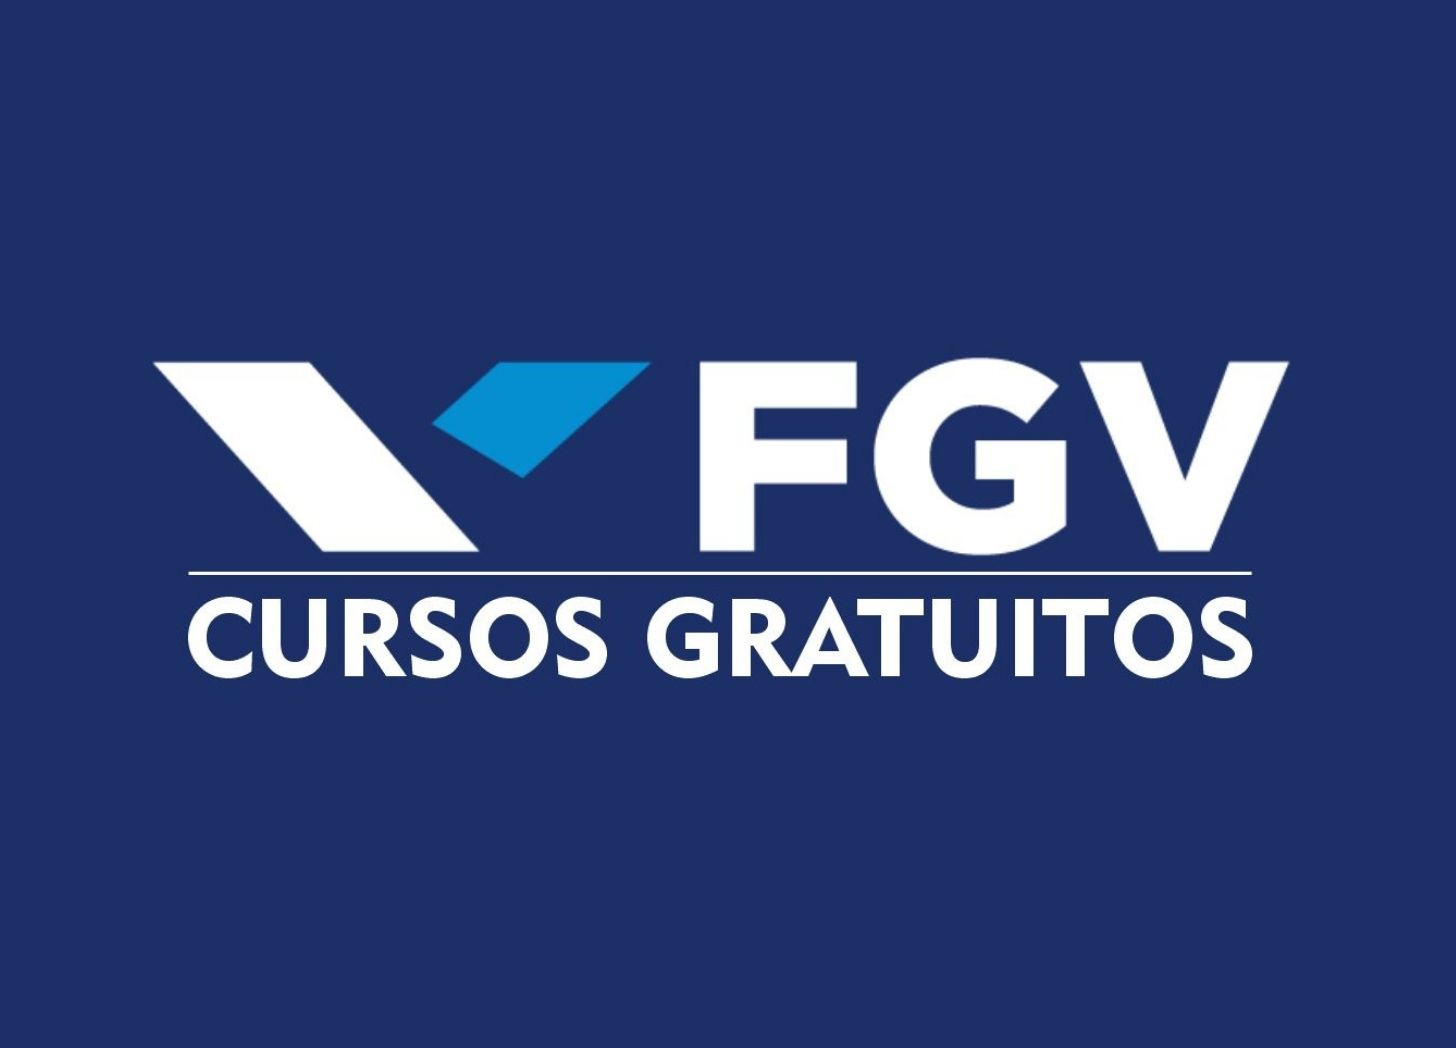 Logo da FGV com título “Cursos Gratuitos” abaixo.